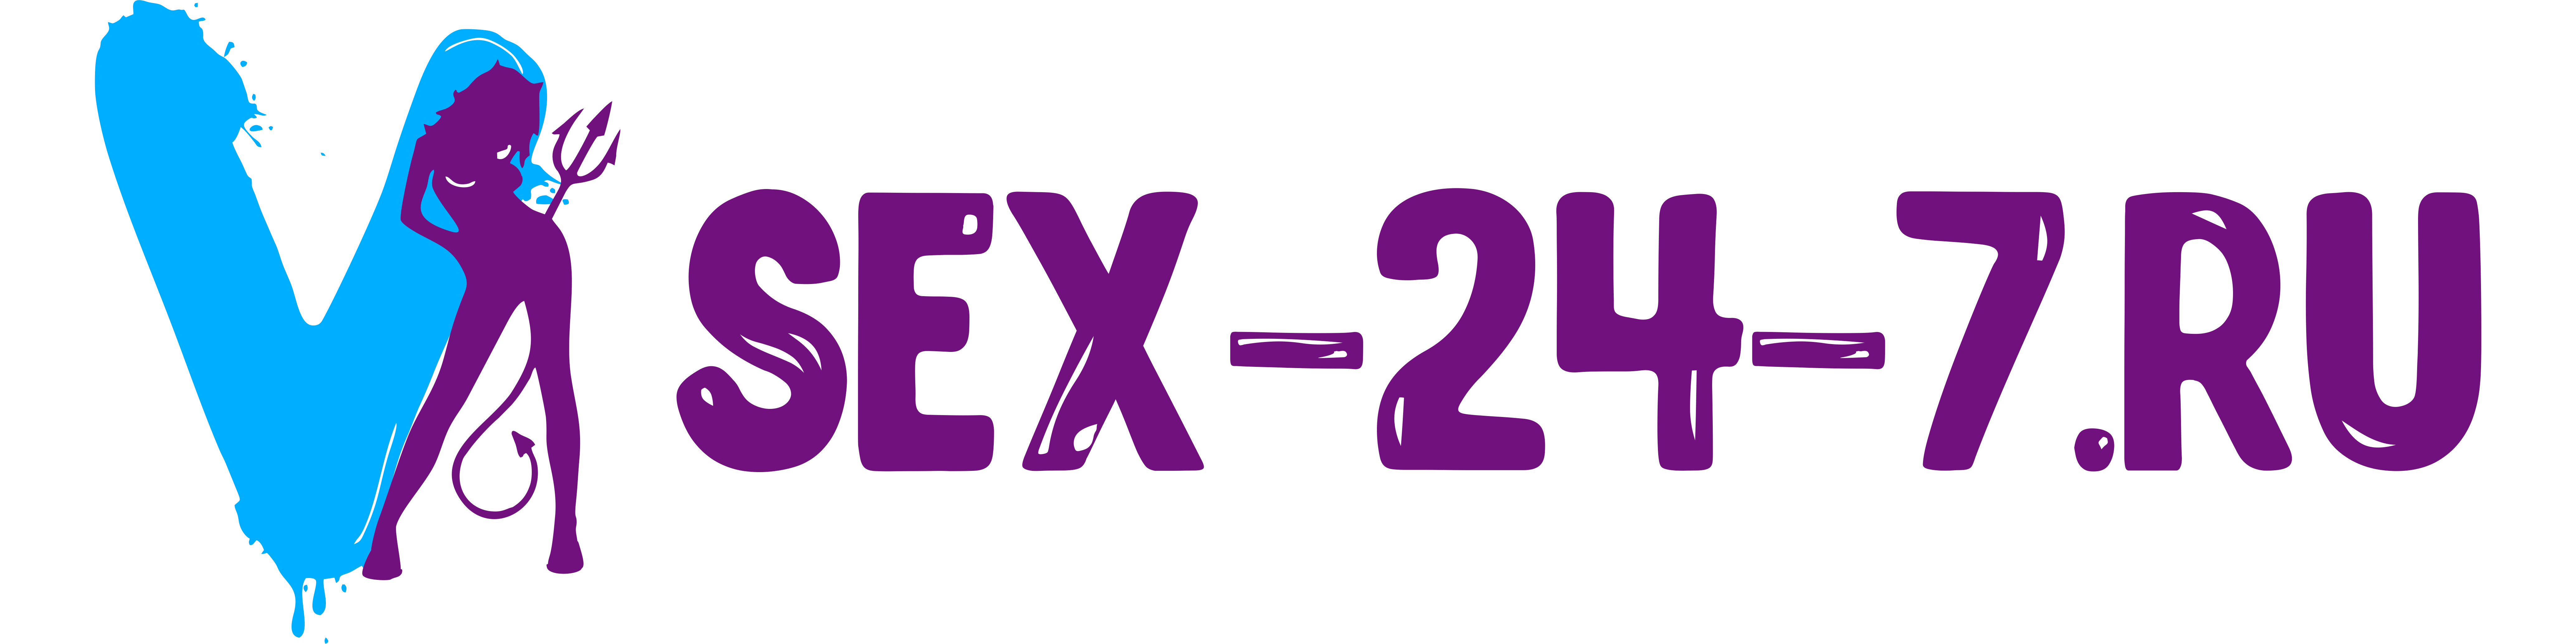 sex24-7.ru